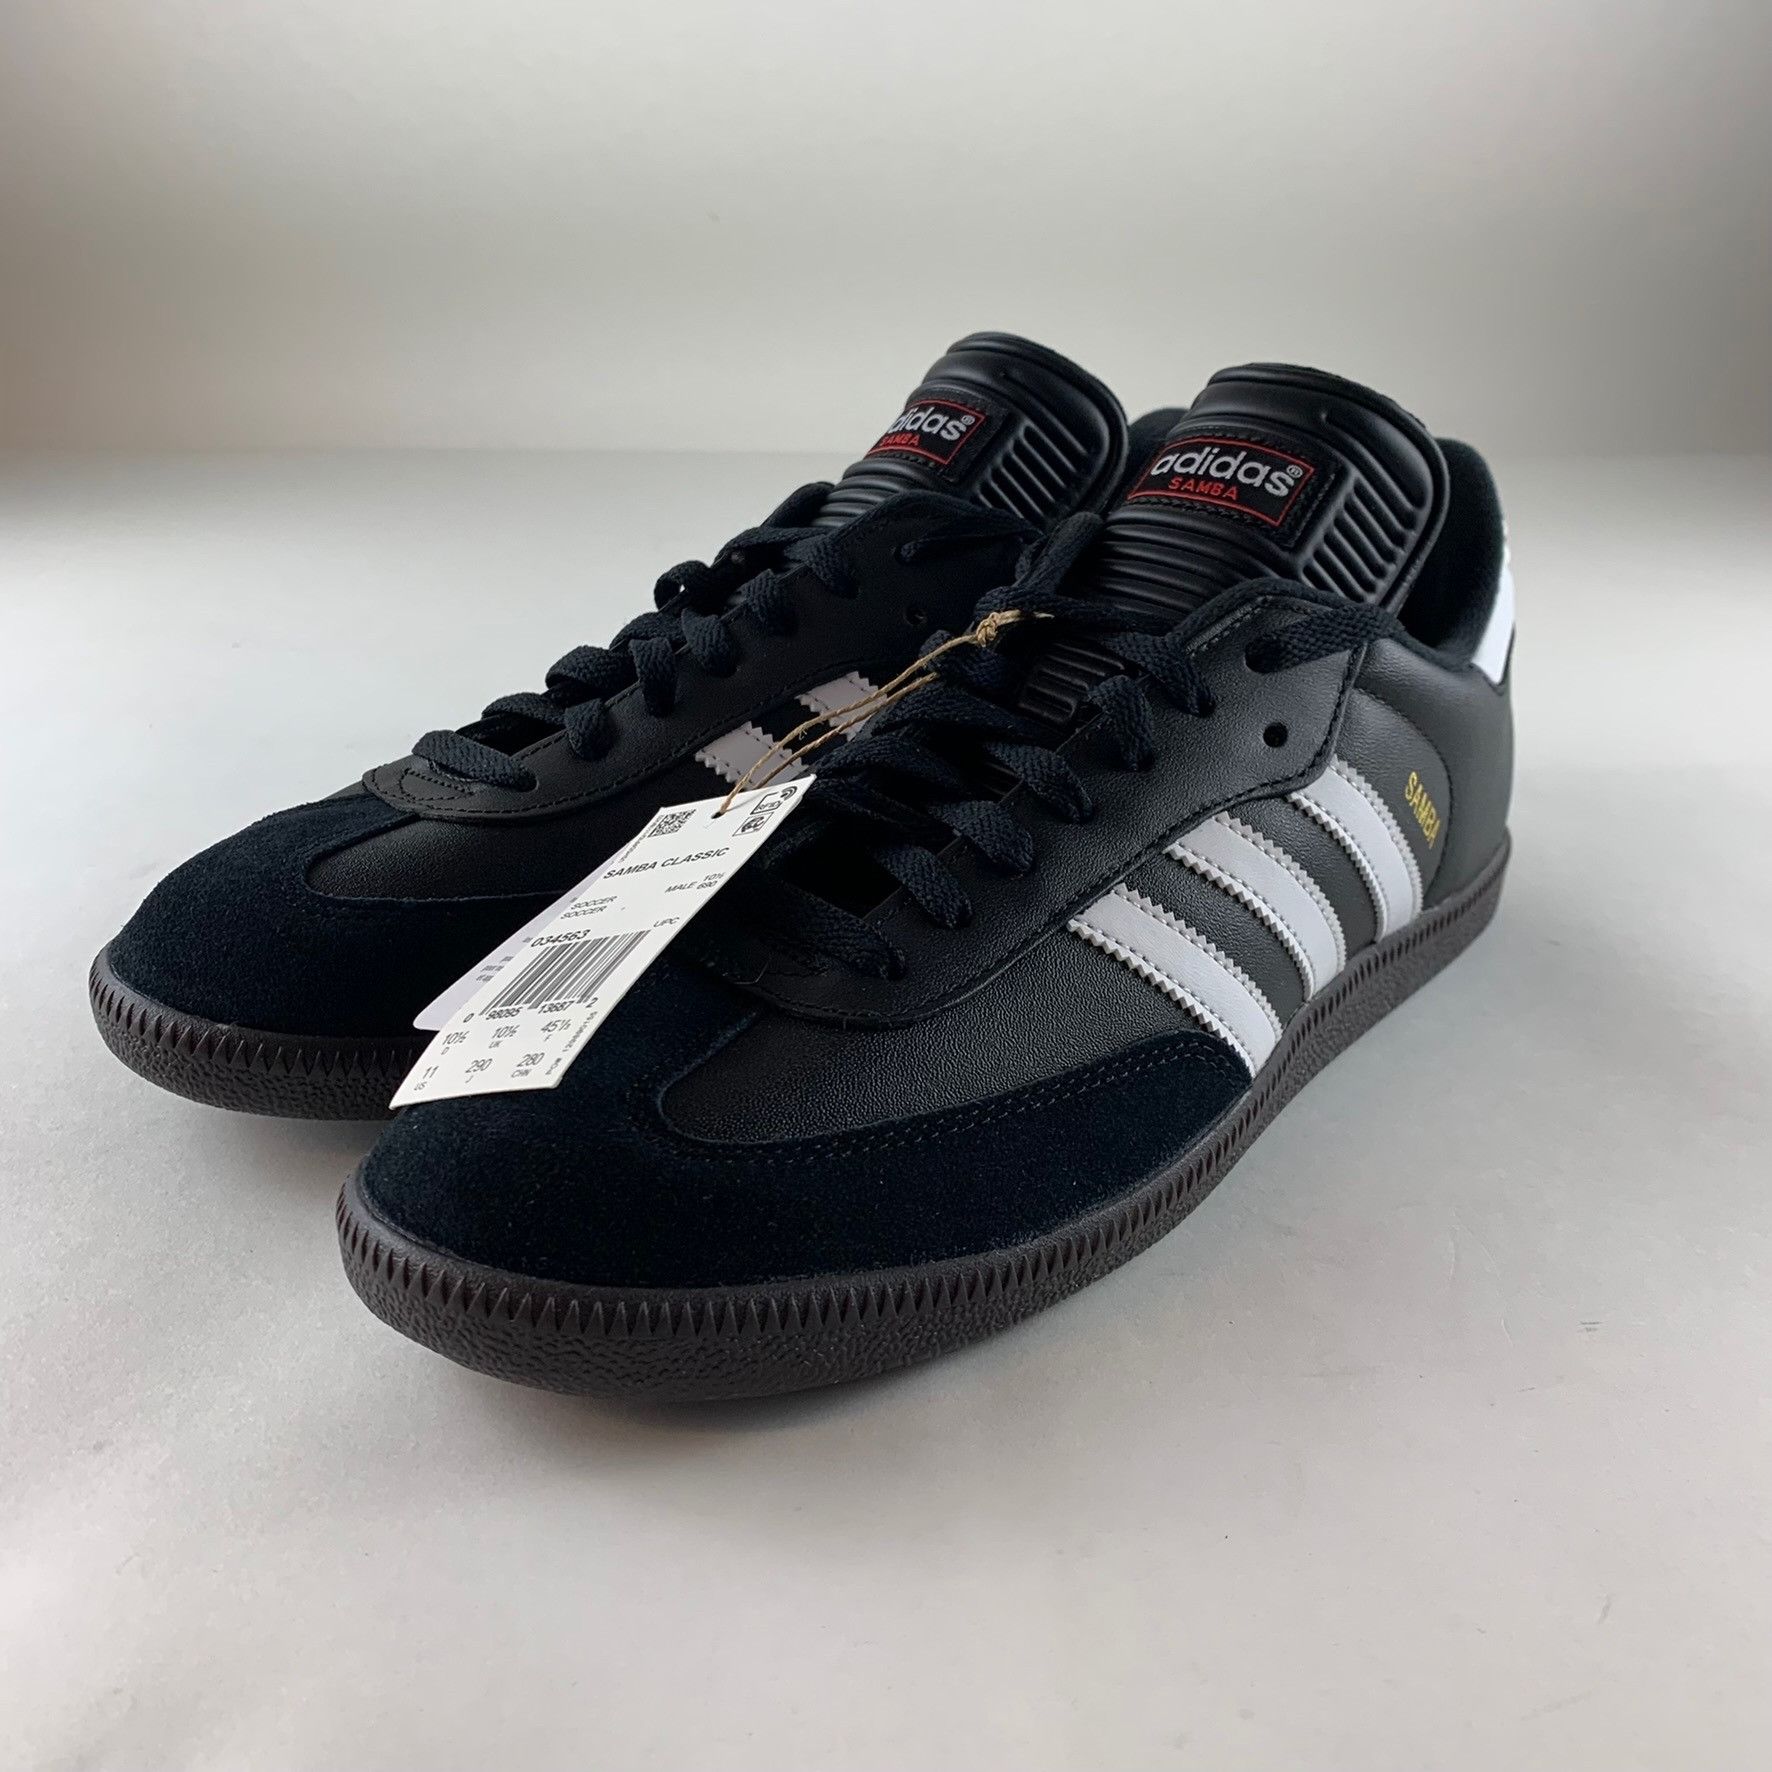 Adidas Adidas Samba Black Sneakers 034563 | Grailed